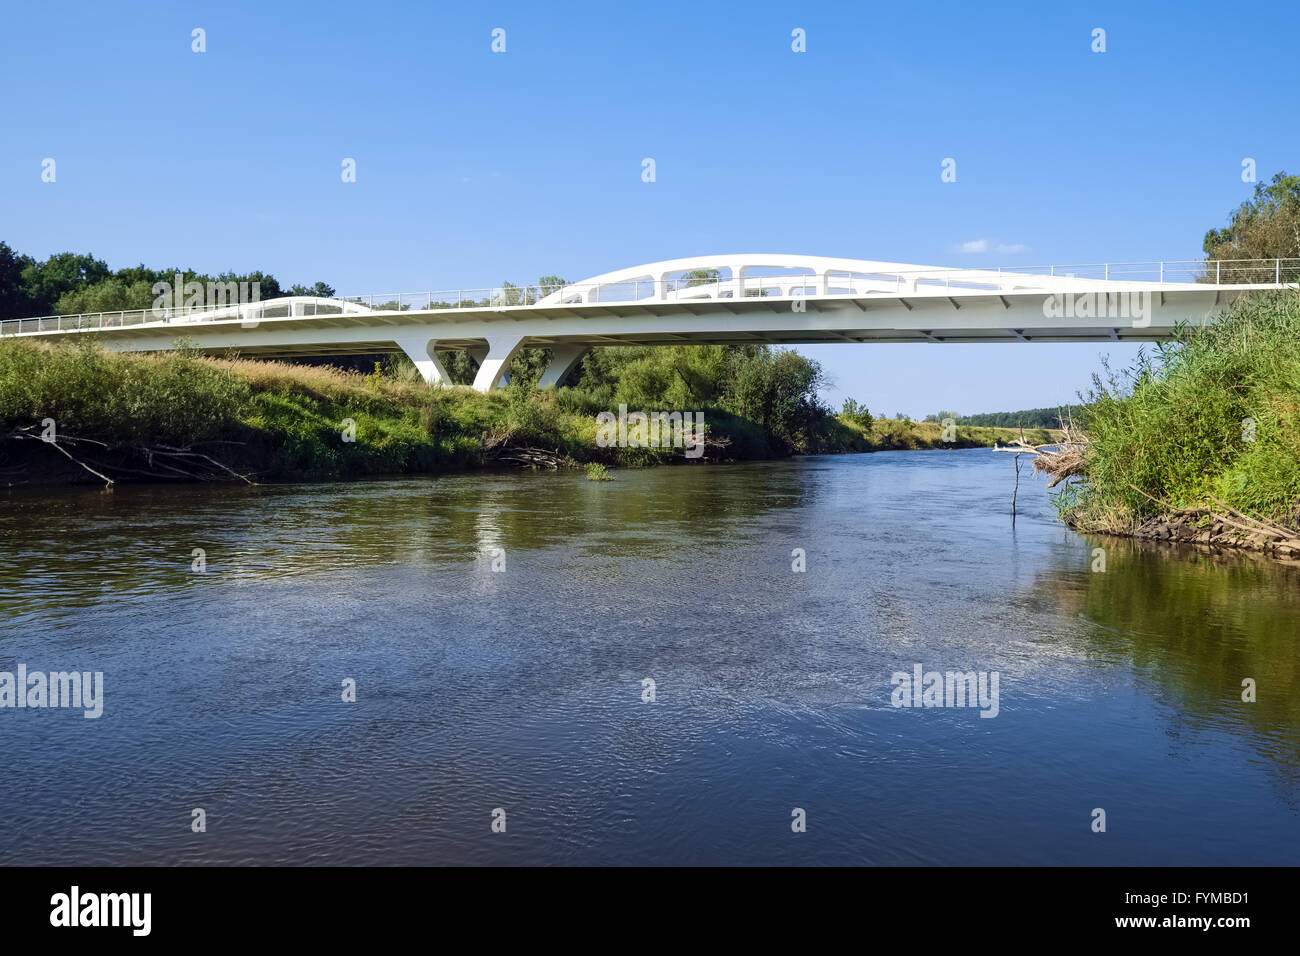 Neissewelle - pont sur la rivière Neisse, Allemagne Banque D'Images